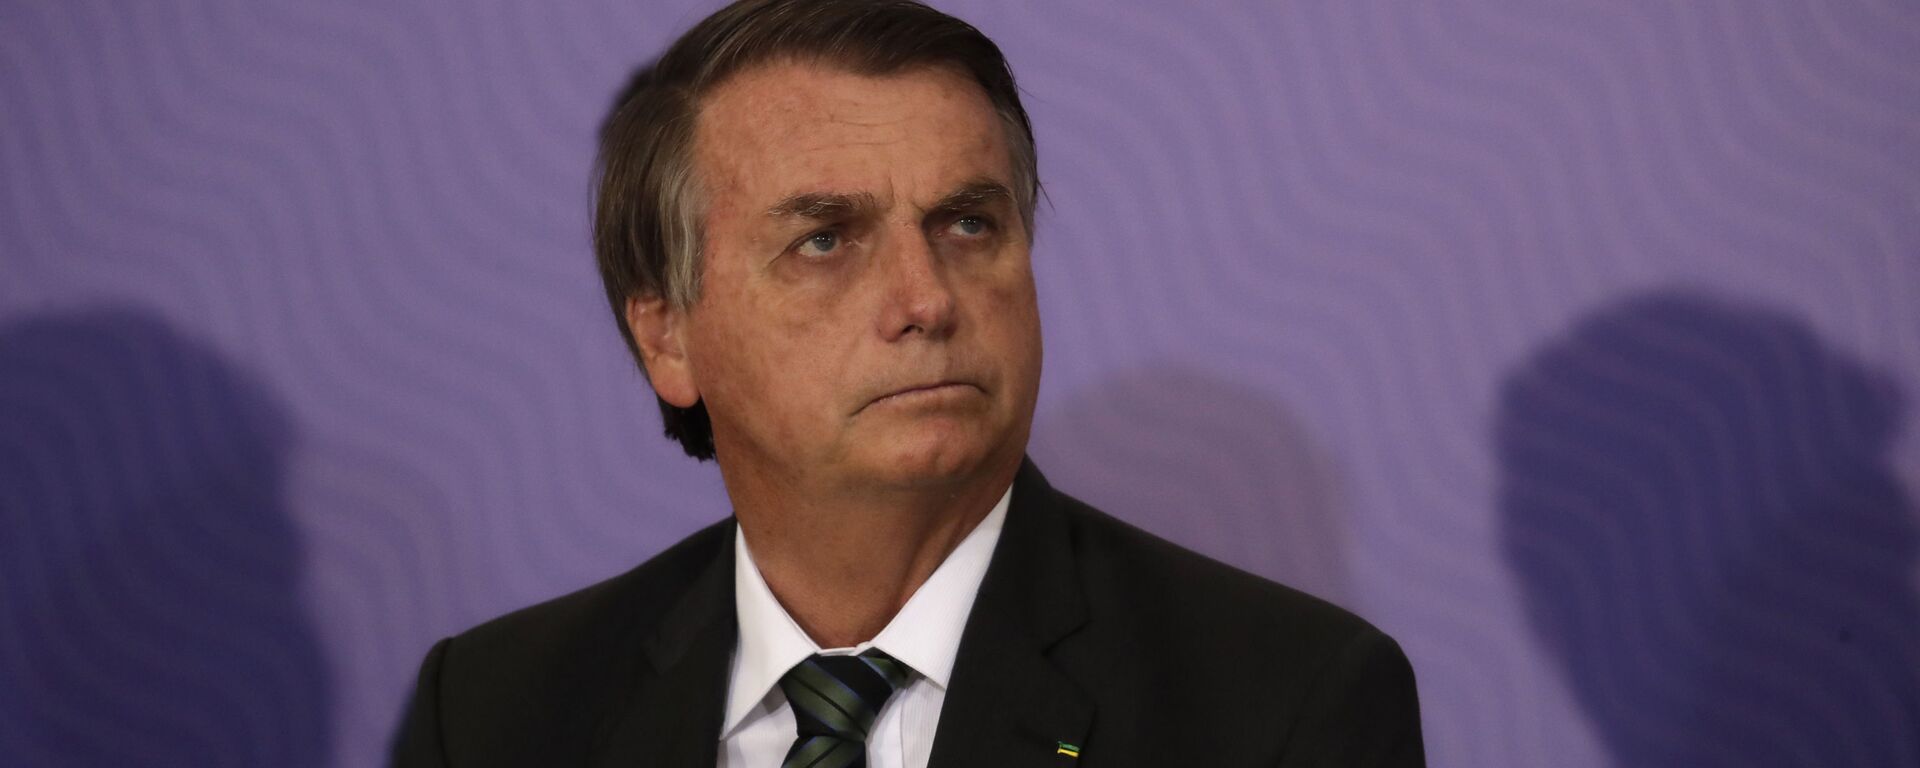 El presidente de Brasil, Jair Bolsonaro - Sputnik Mundo, 1920, 29.03.2021